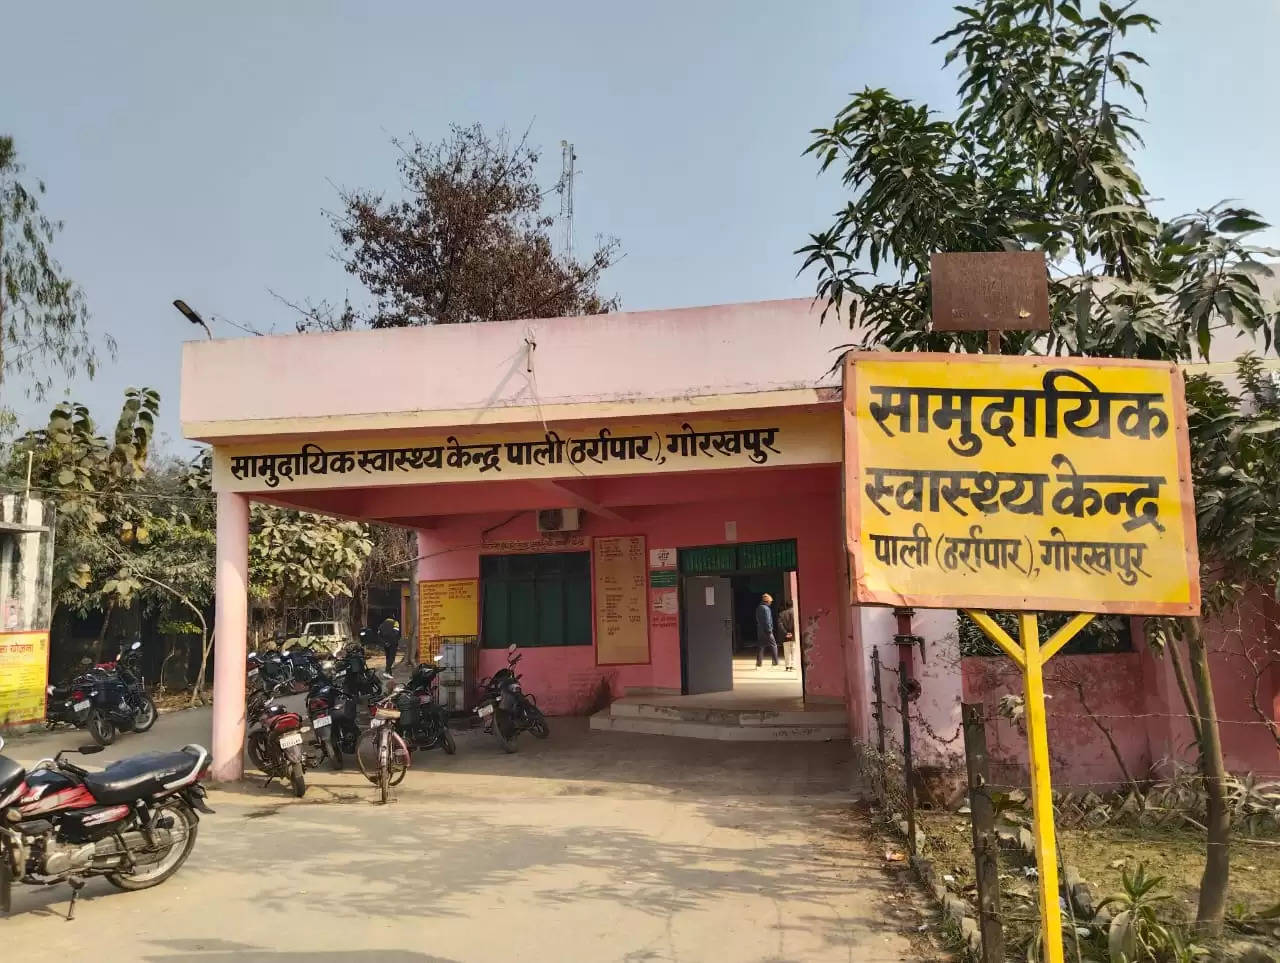 Gorakhpur news: घघसरा बाजार में आम जनता के स्वास्थ्य के साथ हो रहा खिलवाड़ जिम्मेदार बने मूकदर्शक